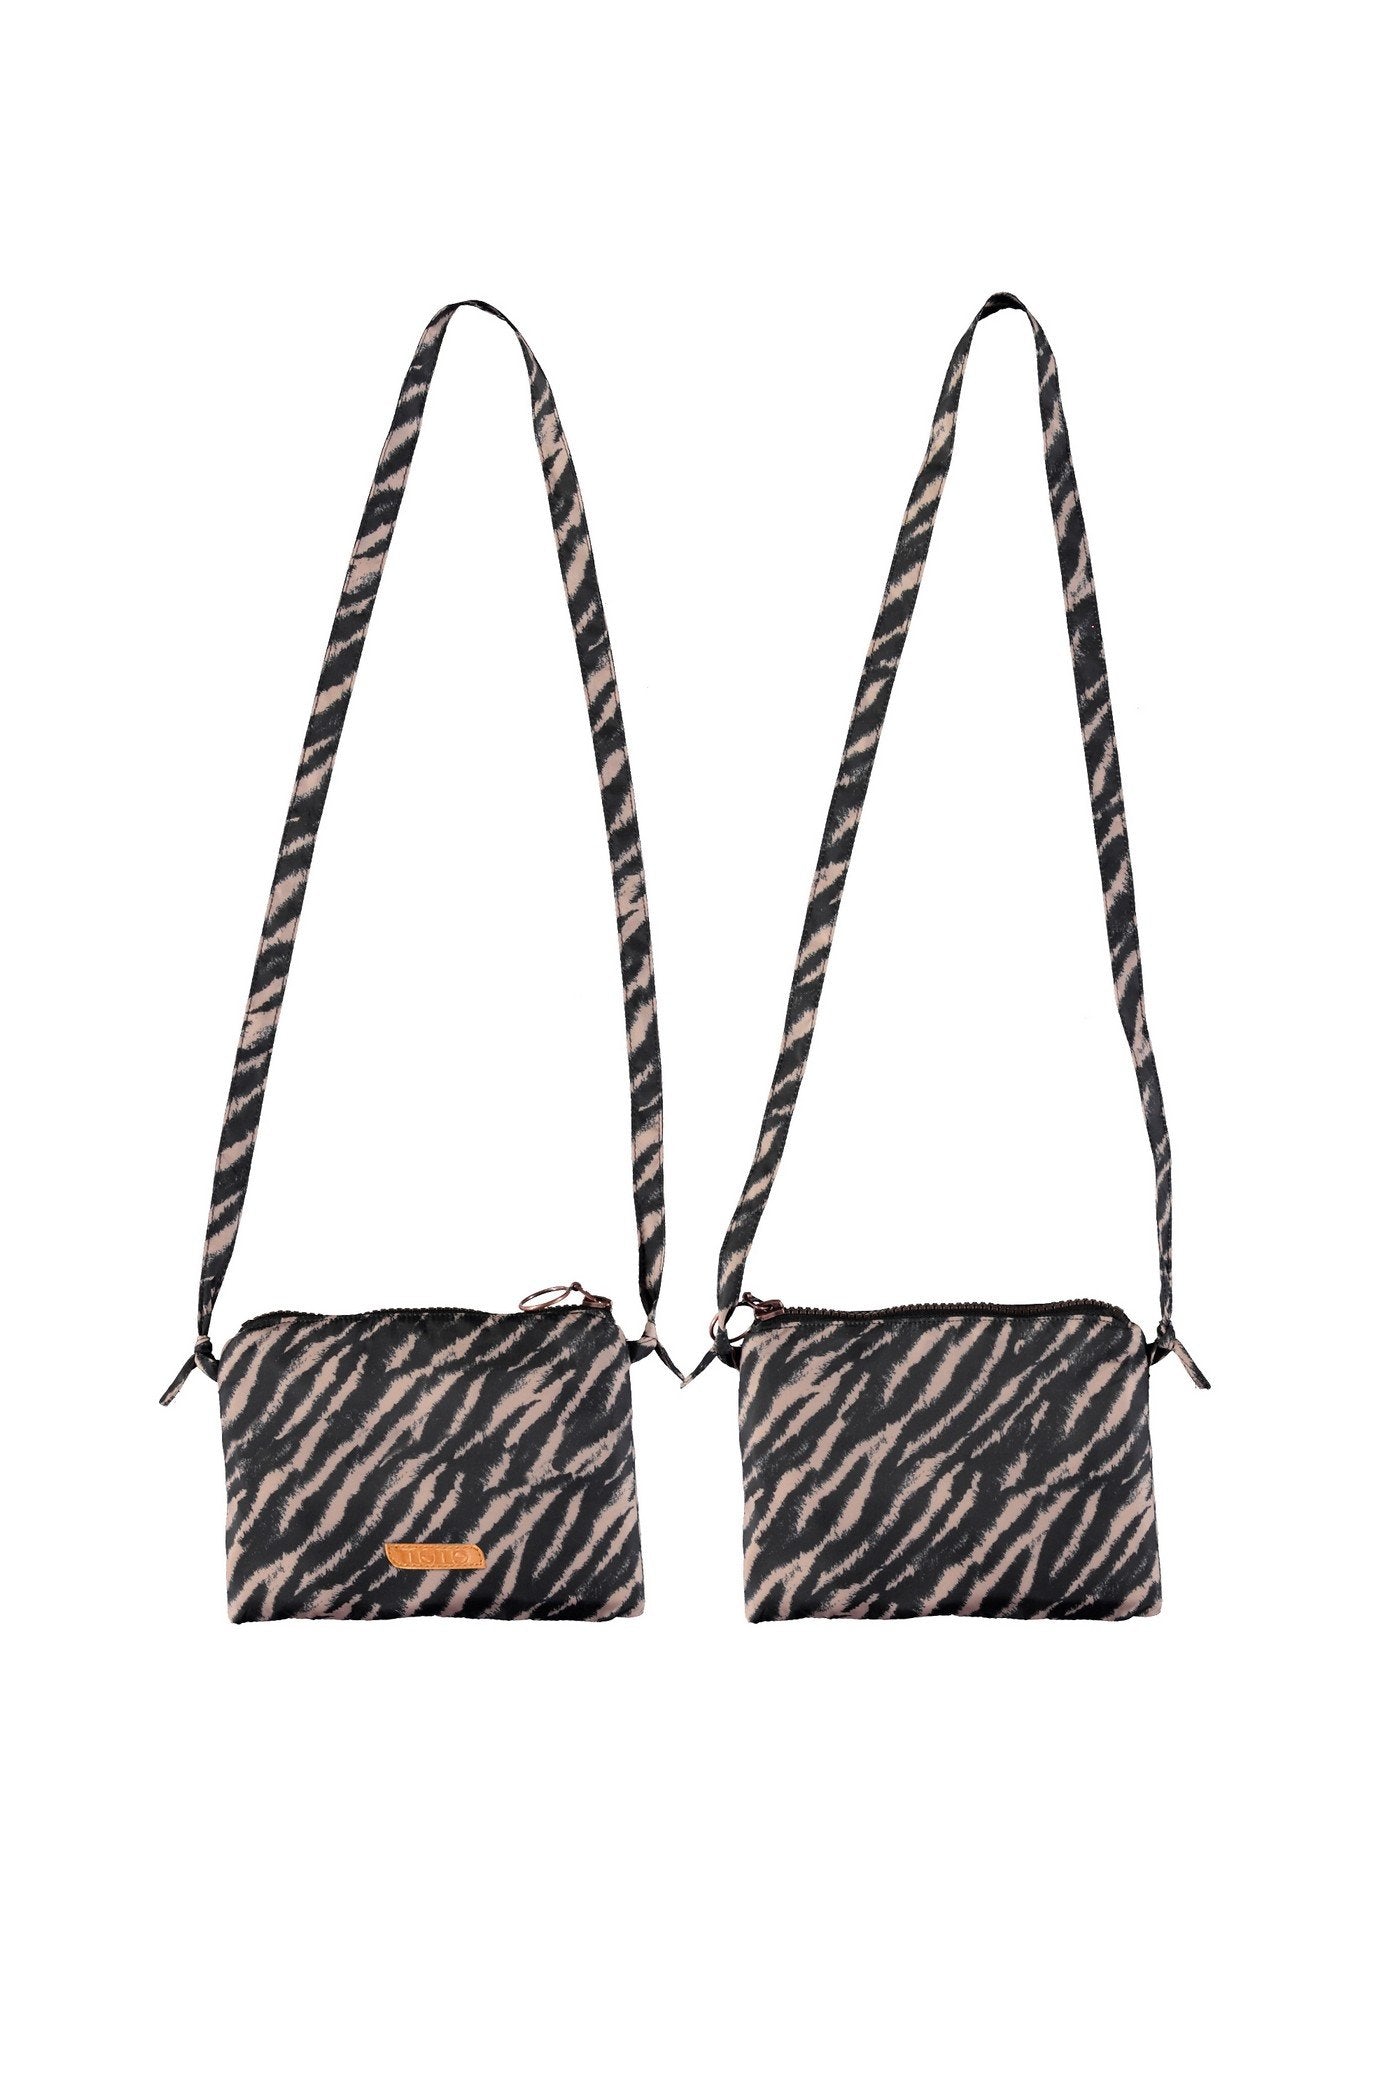 Meisjes Bag- little NONO bag van NoNo in de kleur Jet Black in maat One Size.